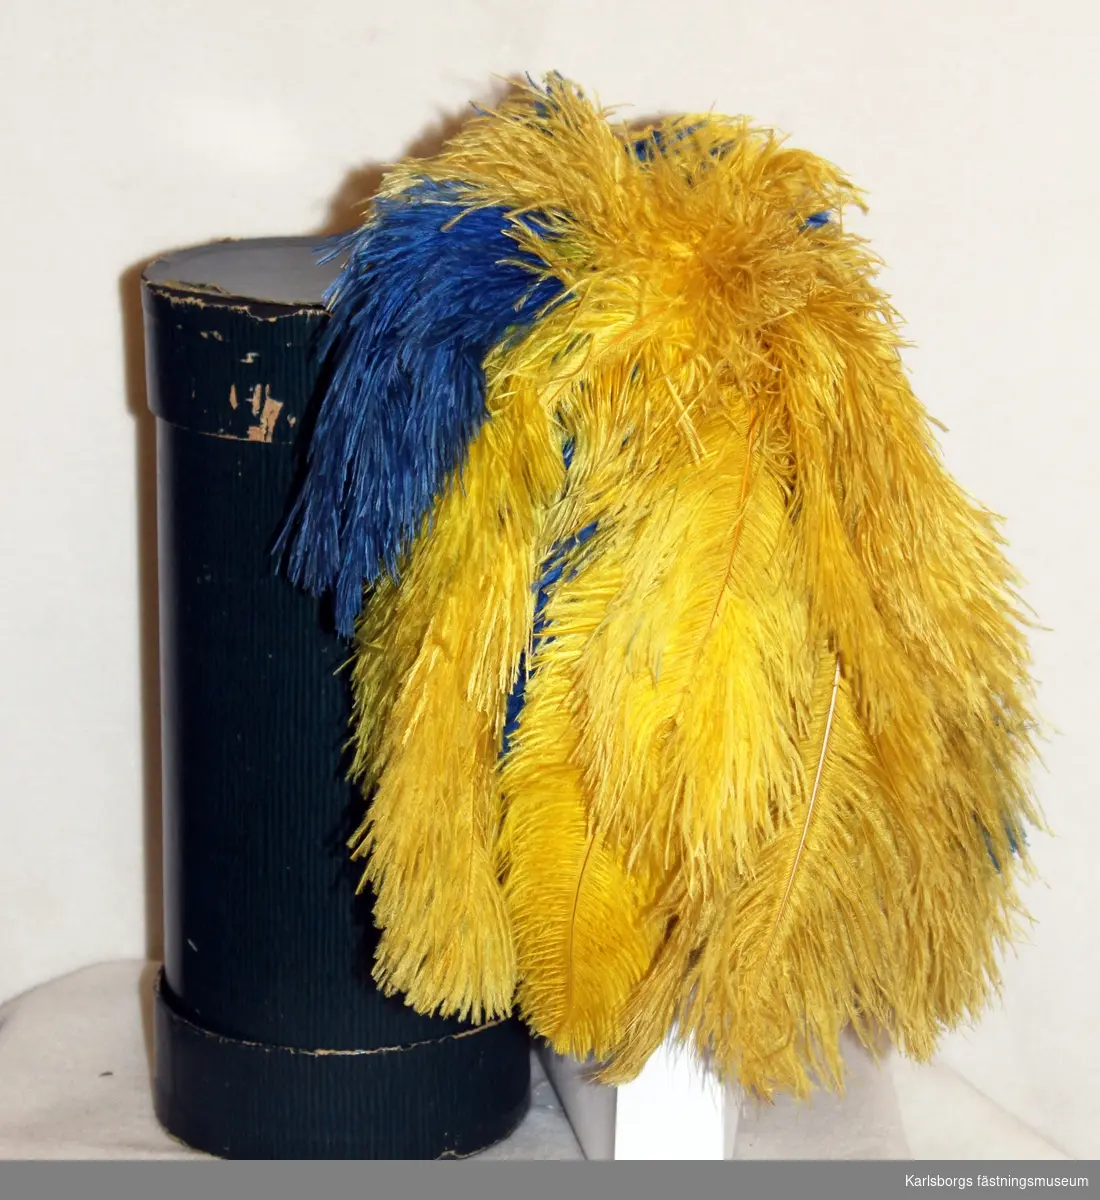 Plym till hatt, av bicorn-typ m/1854. Gula och blå fjädrar. Förvaras i en rund, blå kartong. Se vidare nr 7461.
har tillh överbef h jung